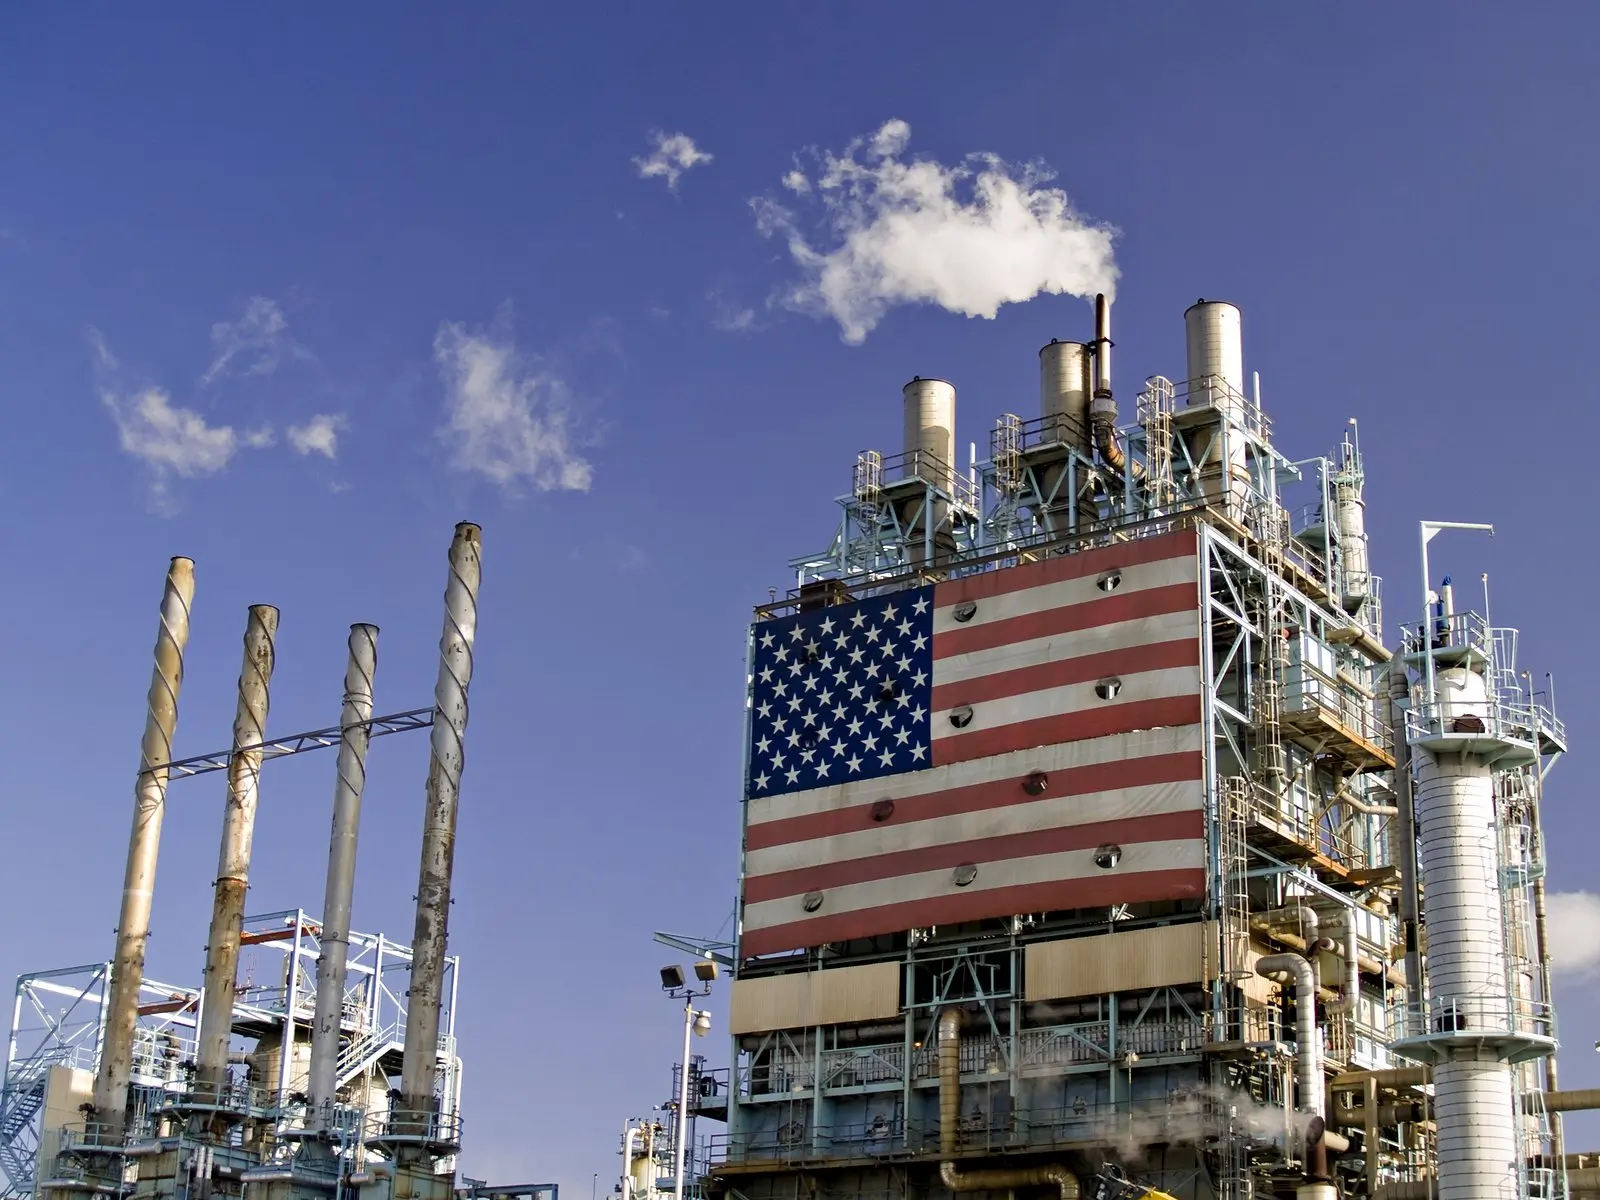 El petróleo sigue siende la principal fuentes de energía de EEUU desde 1950.